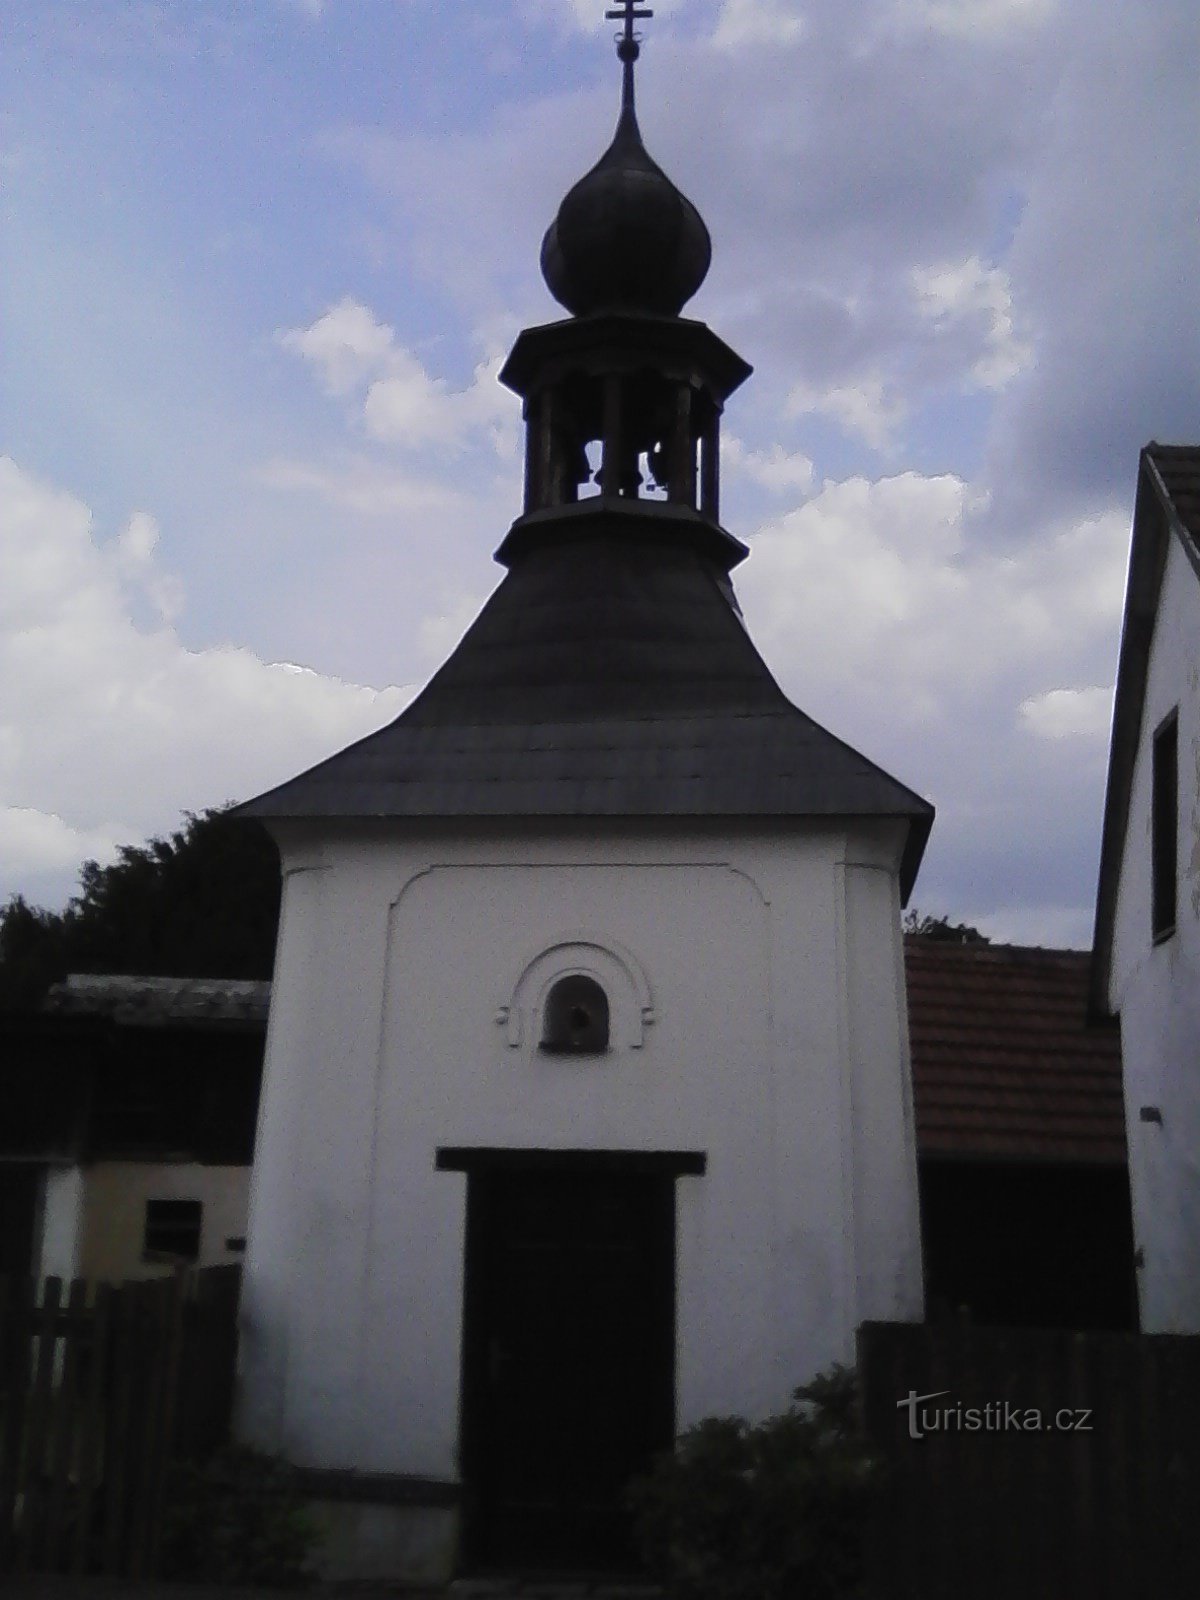 2. Nhà nguyện làng ở Horní Hořice.